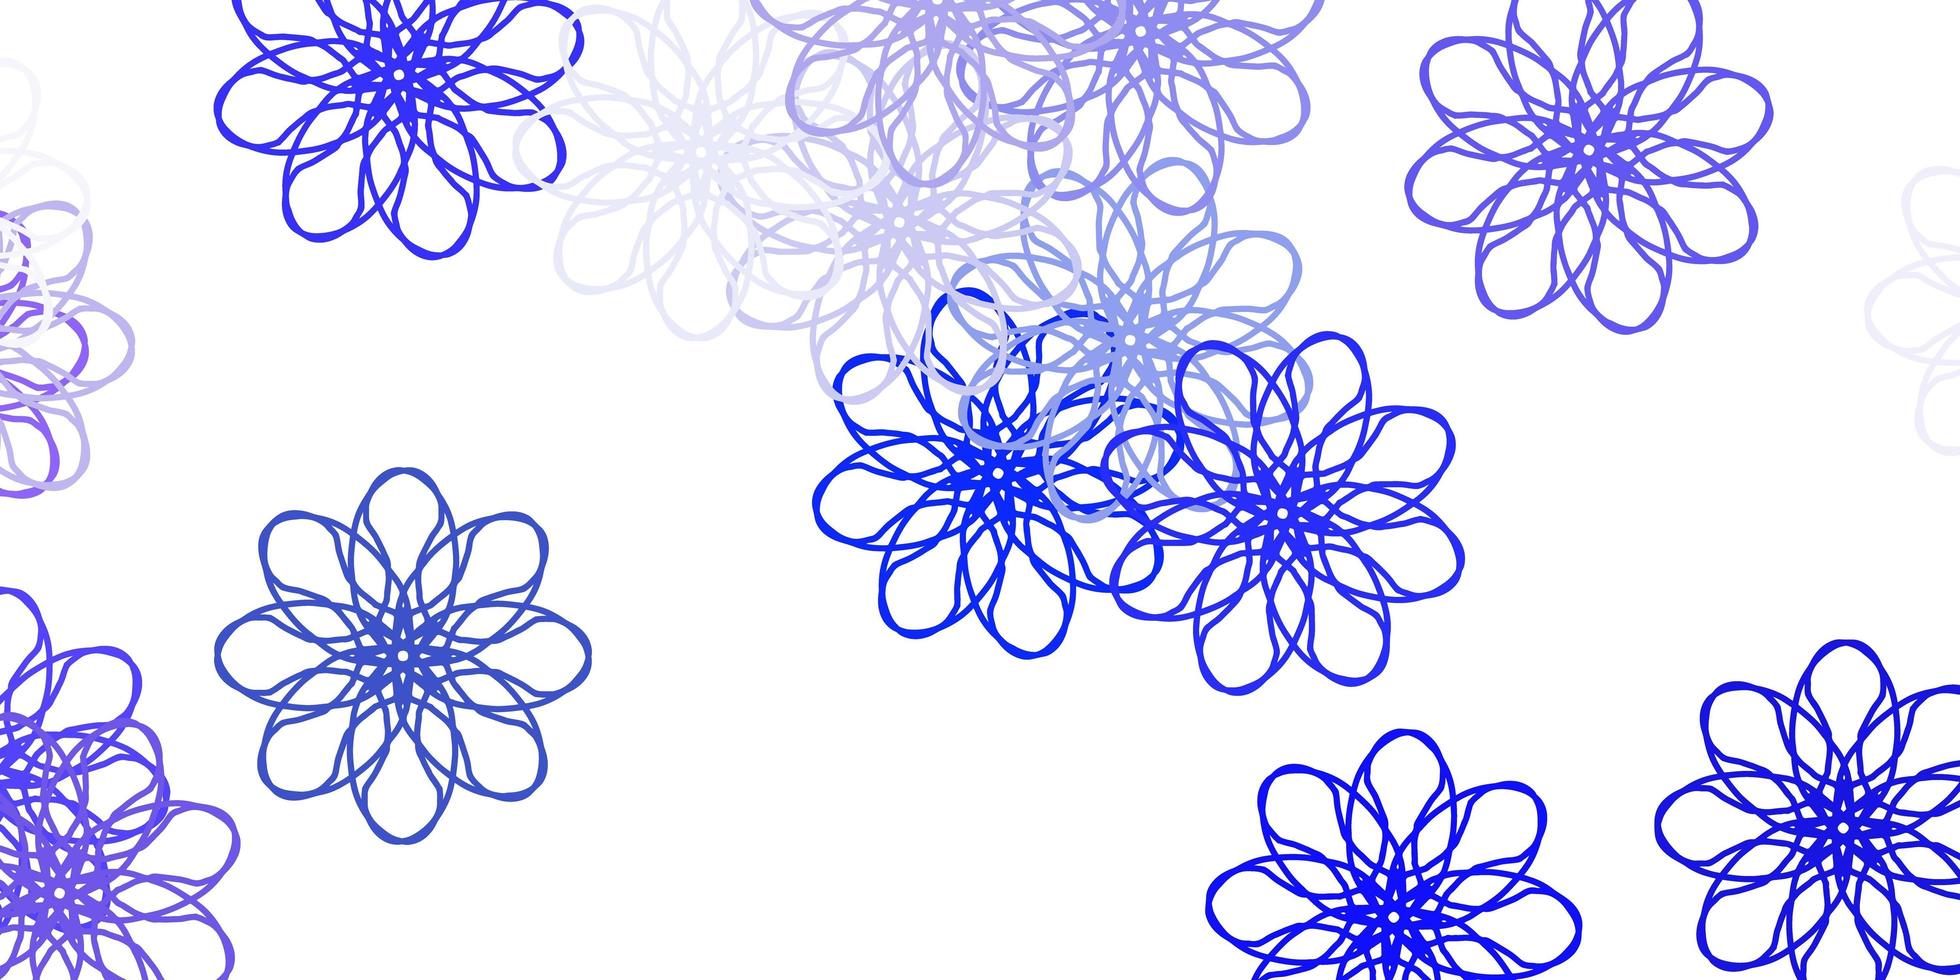 padrão de doodle de vetor roxo claro com flores